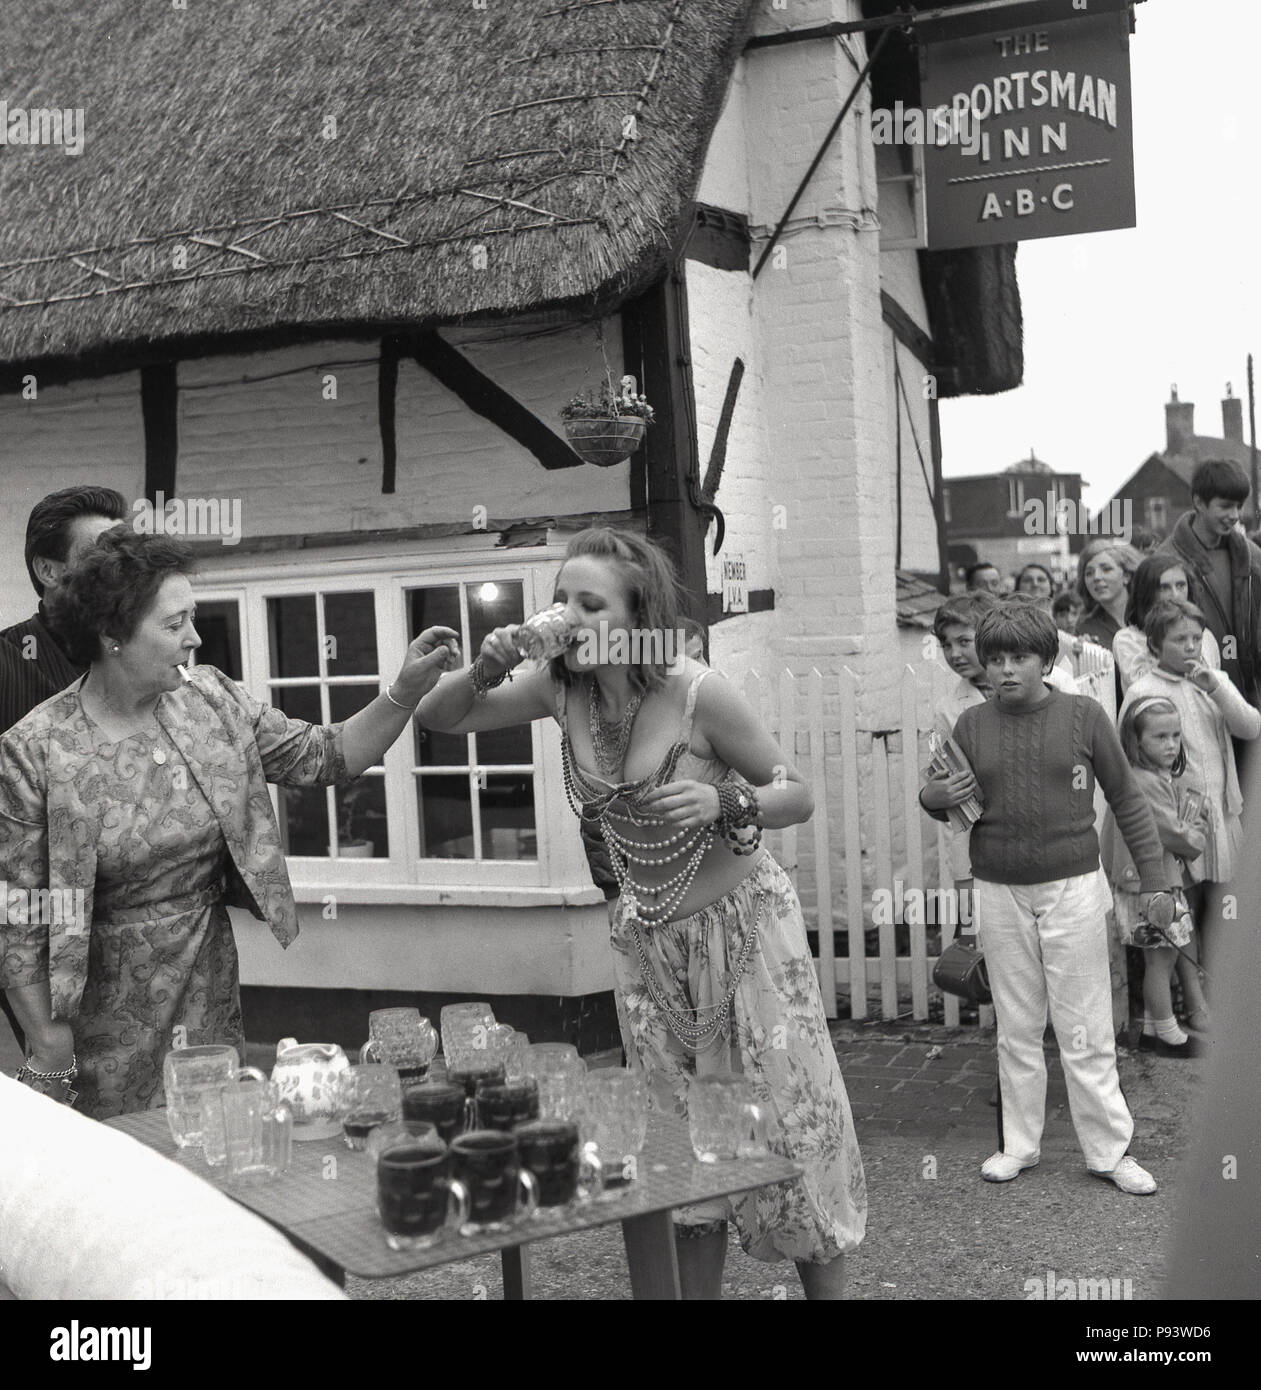 1967, una giovane donna che indossa abiti fantasiosi bevande rapidamente un bicchiere di birra da una tabella di pieni e di vuoti boccali di birra al di fuori lo sportivo Inn at Quainton village, Aylesbury, Bucks, Inghilterra, Regno Unito. Con la FAG in bocca, il ben vestiti padrona di casa è a portata di mano per raccogliere il vetro, mentre un gruppo di giovani stanno a guardare in segno di stupore. La giovane donna è in competizione in un gioco di bere come parte del villaggio fete celebrazioni. Foto Stock